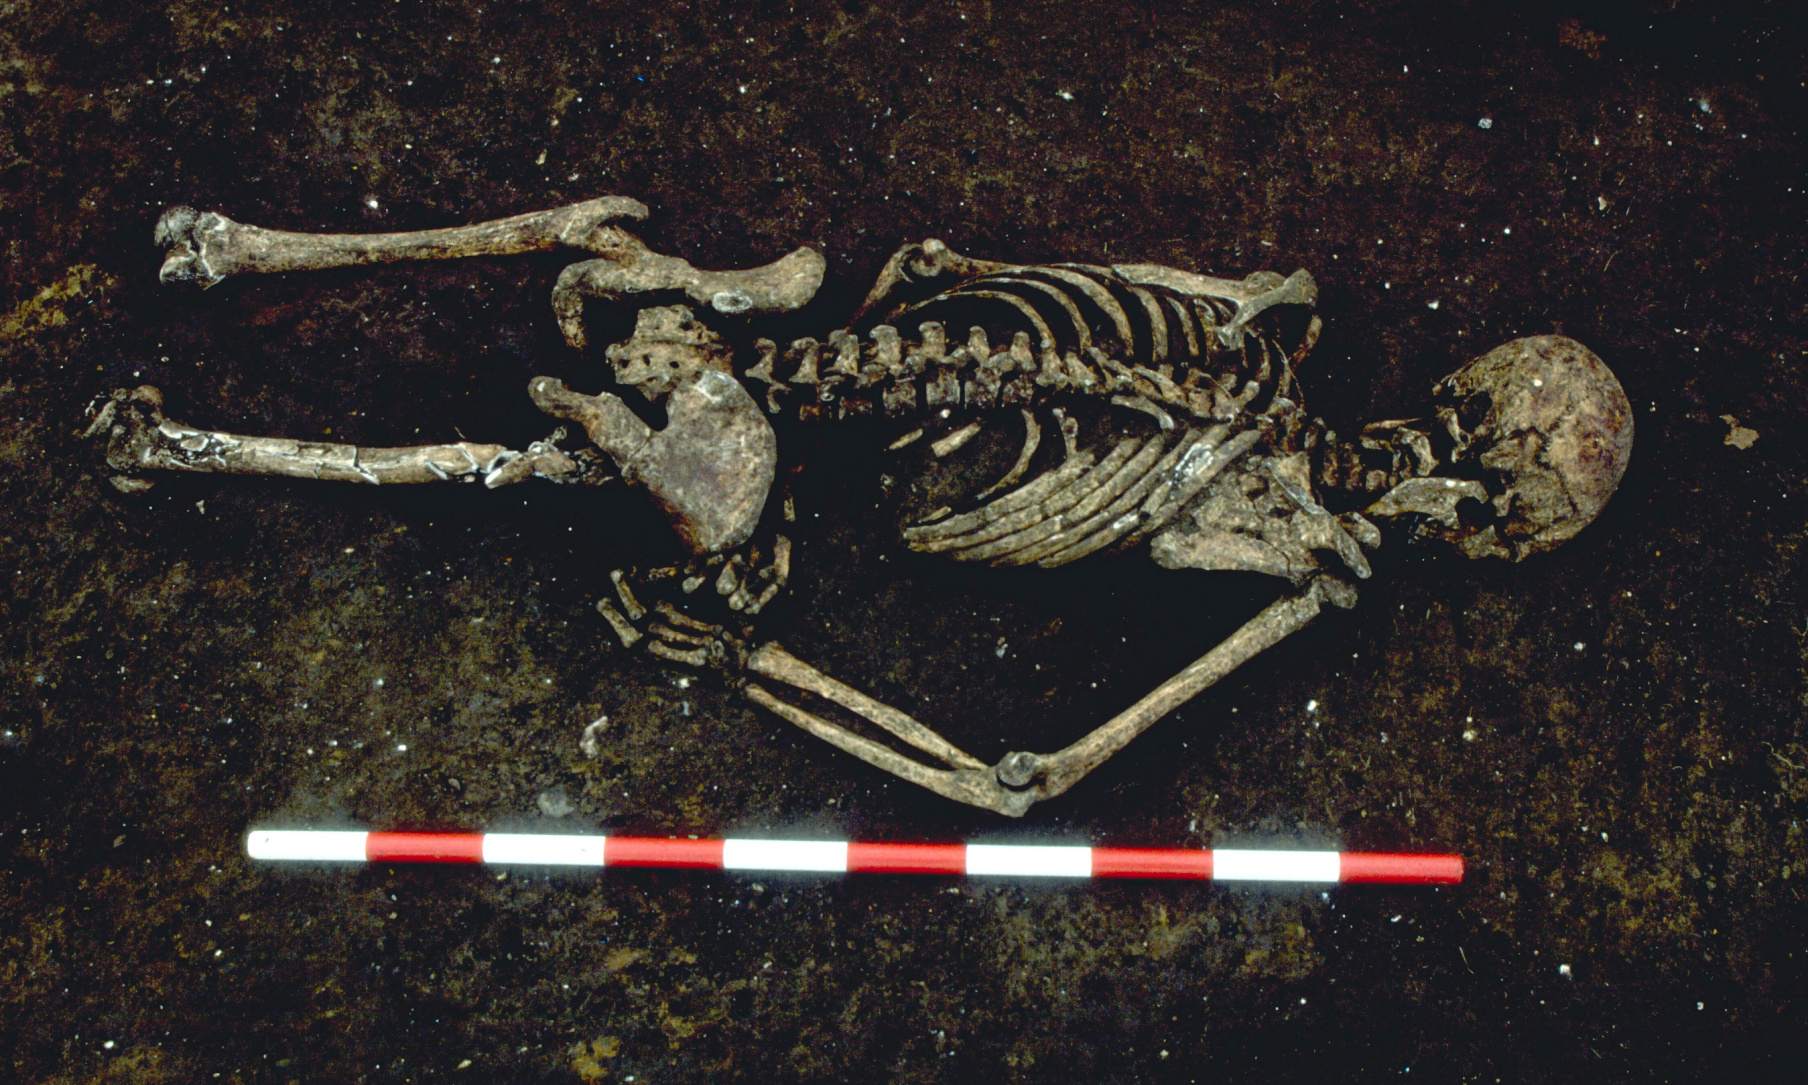 1,500-aastane skelett leiti näoga allapoole, parem käsi ebatavalise nurga all kõverdatud. Uurijad ütlevad, et ta võis surres olla seotud. Tema alakeha hävis tänapäevase arengu tõttu.